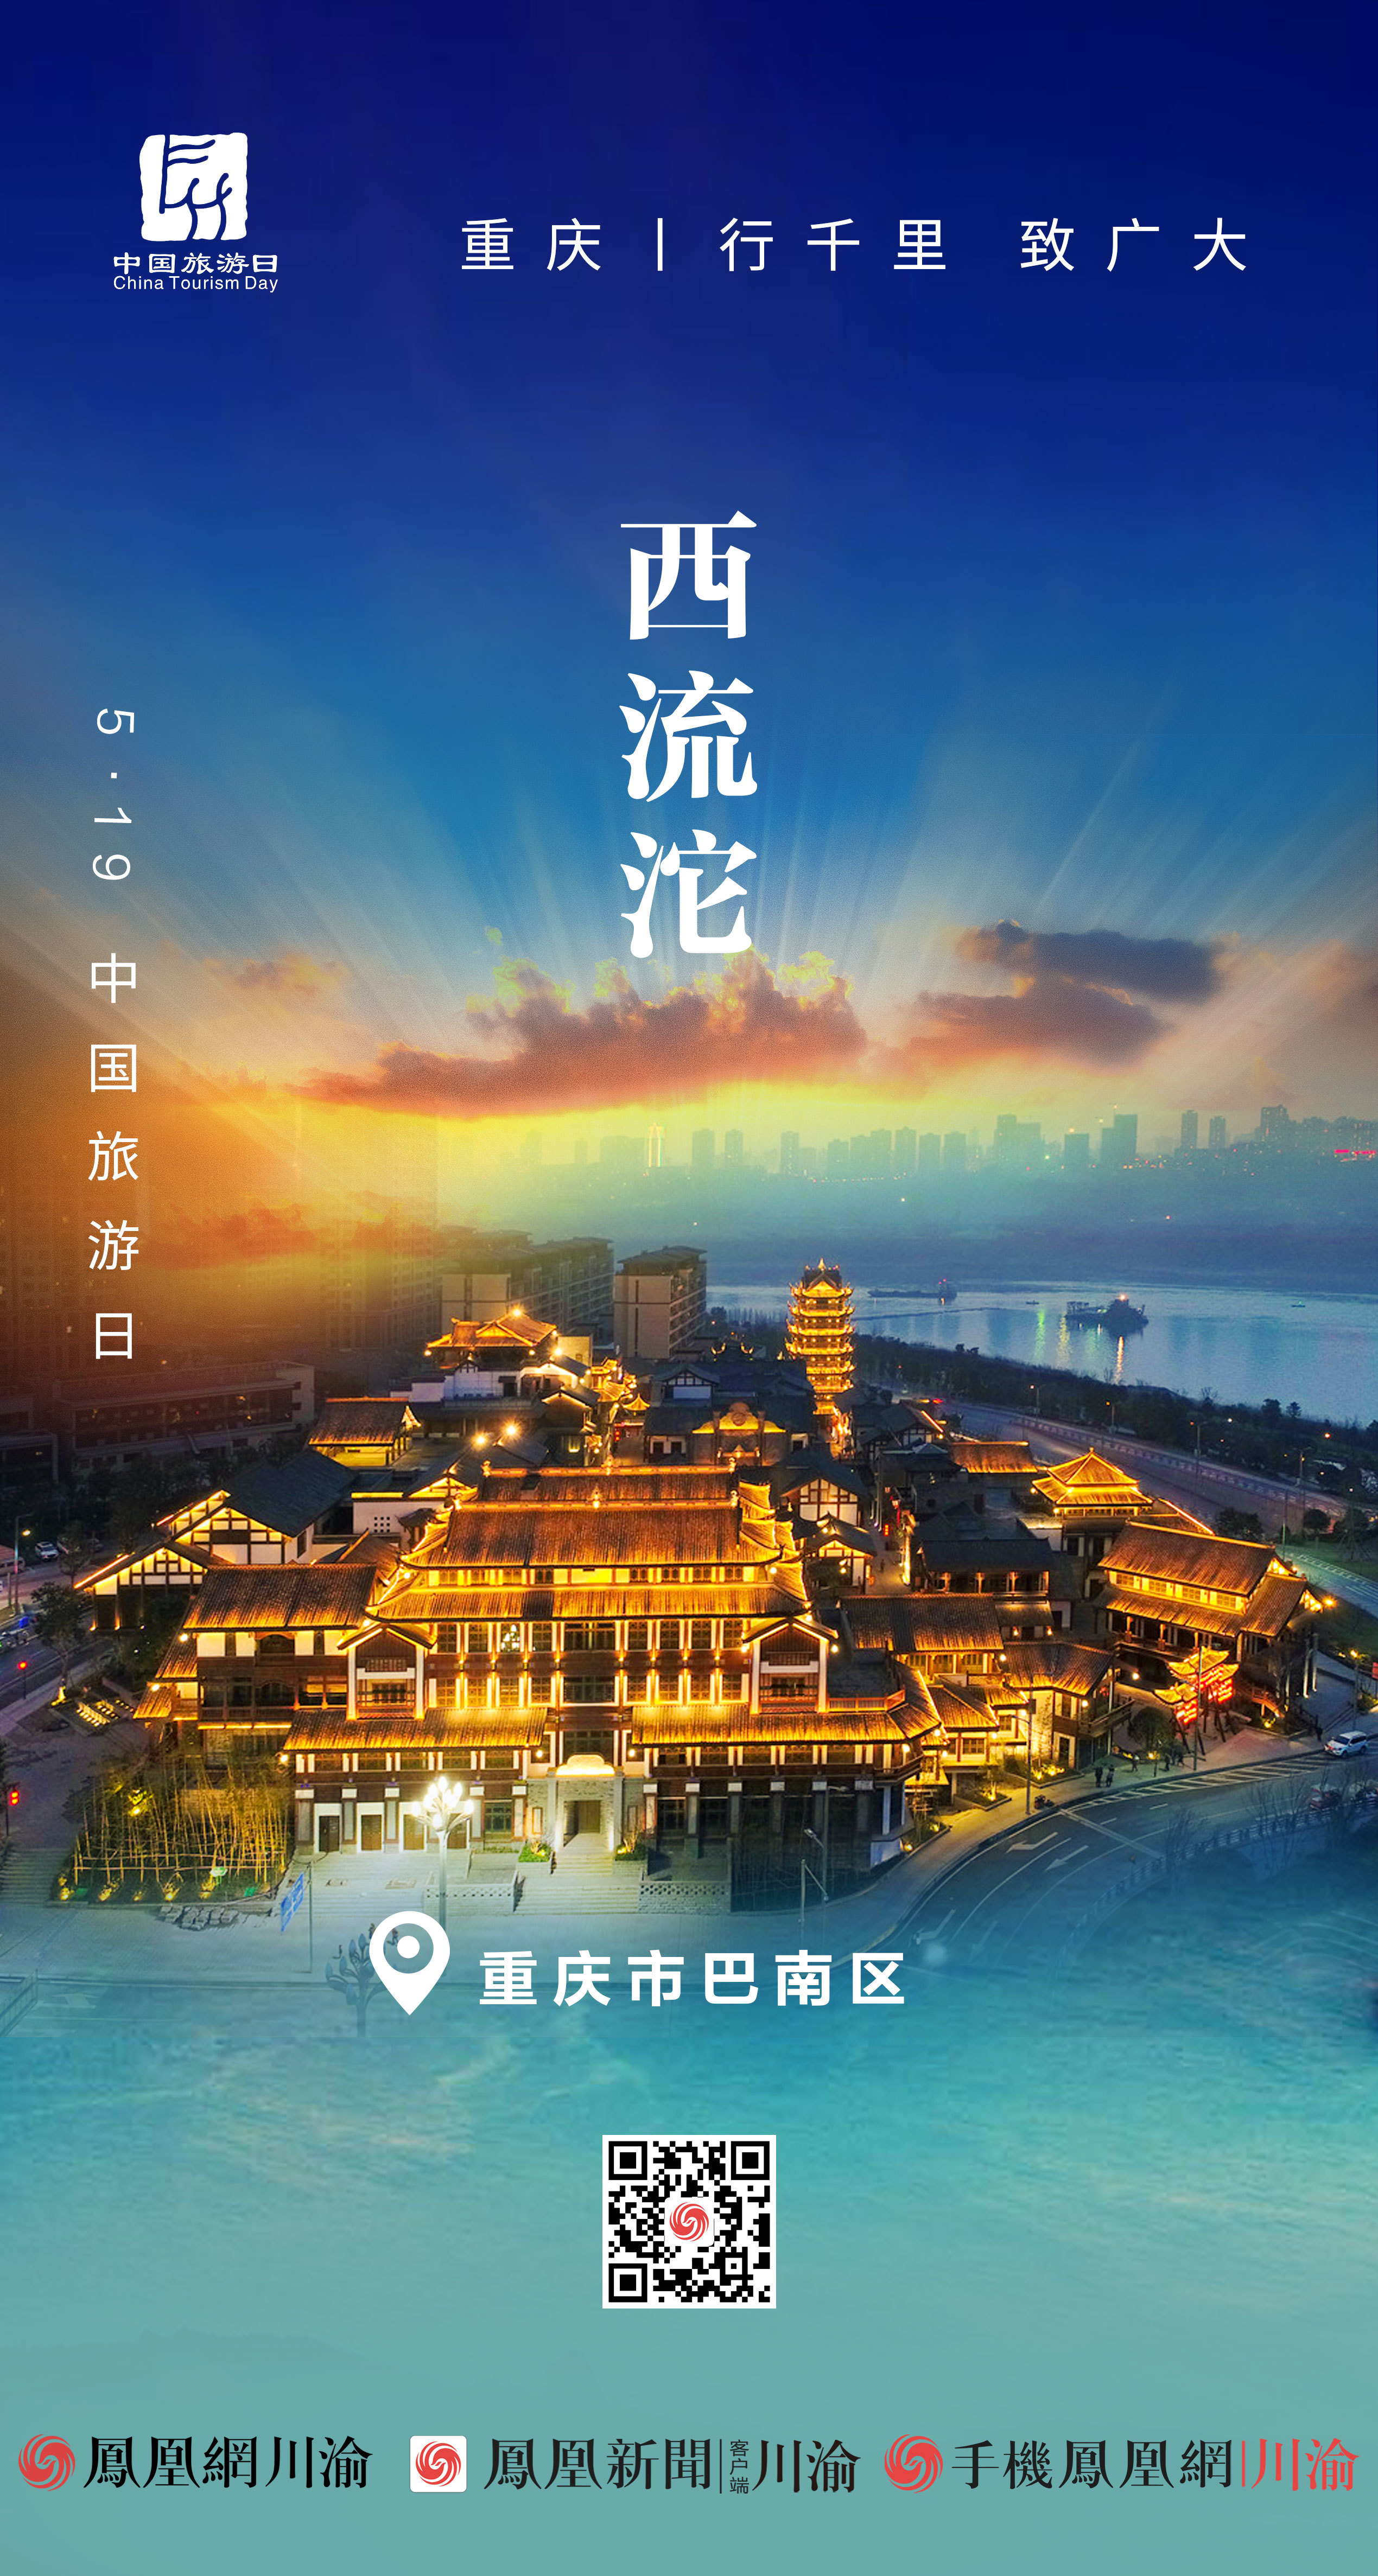 5·19中国旅游日丨阅重庆大美风景 品巴国文化底蕴